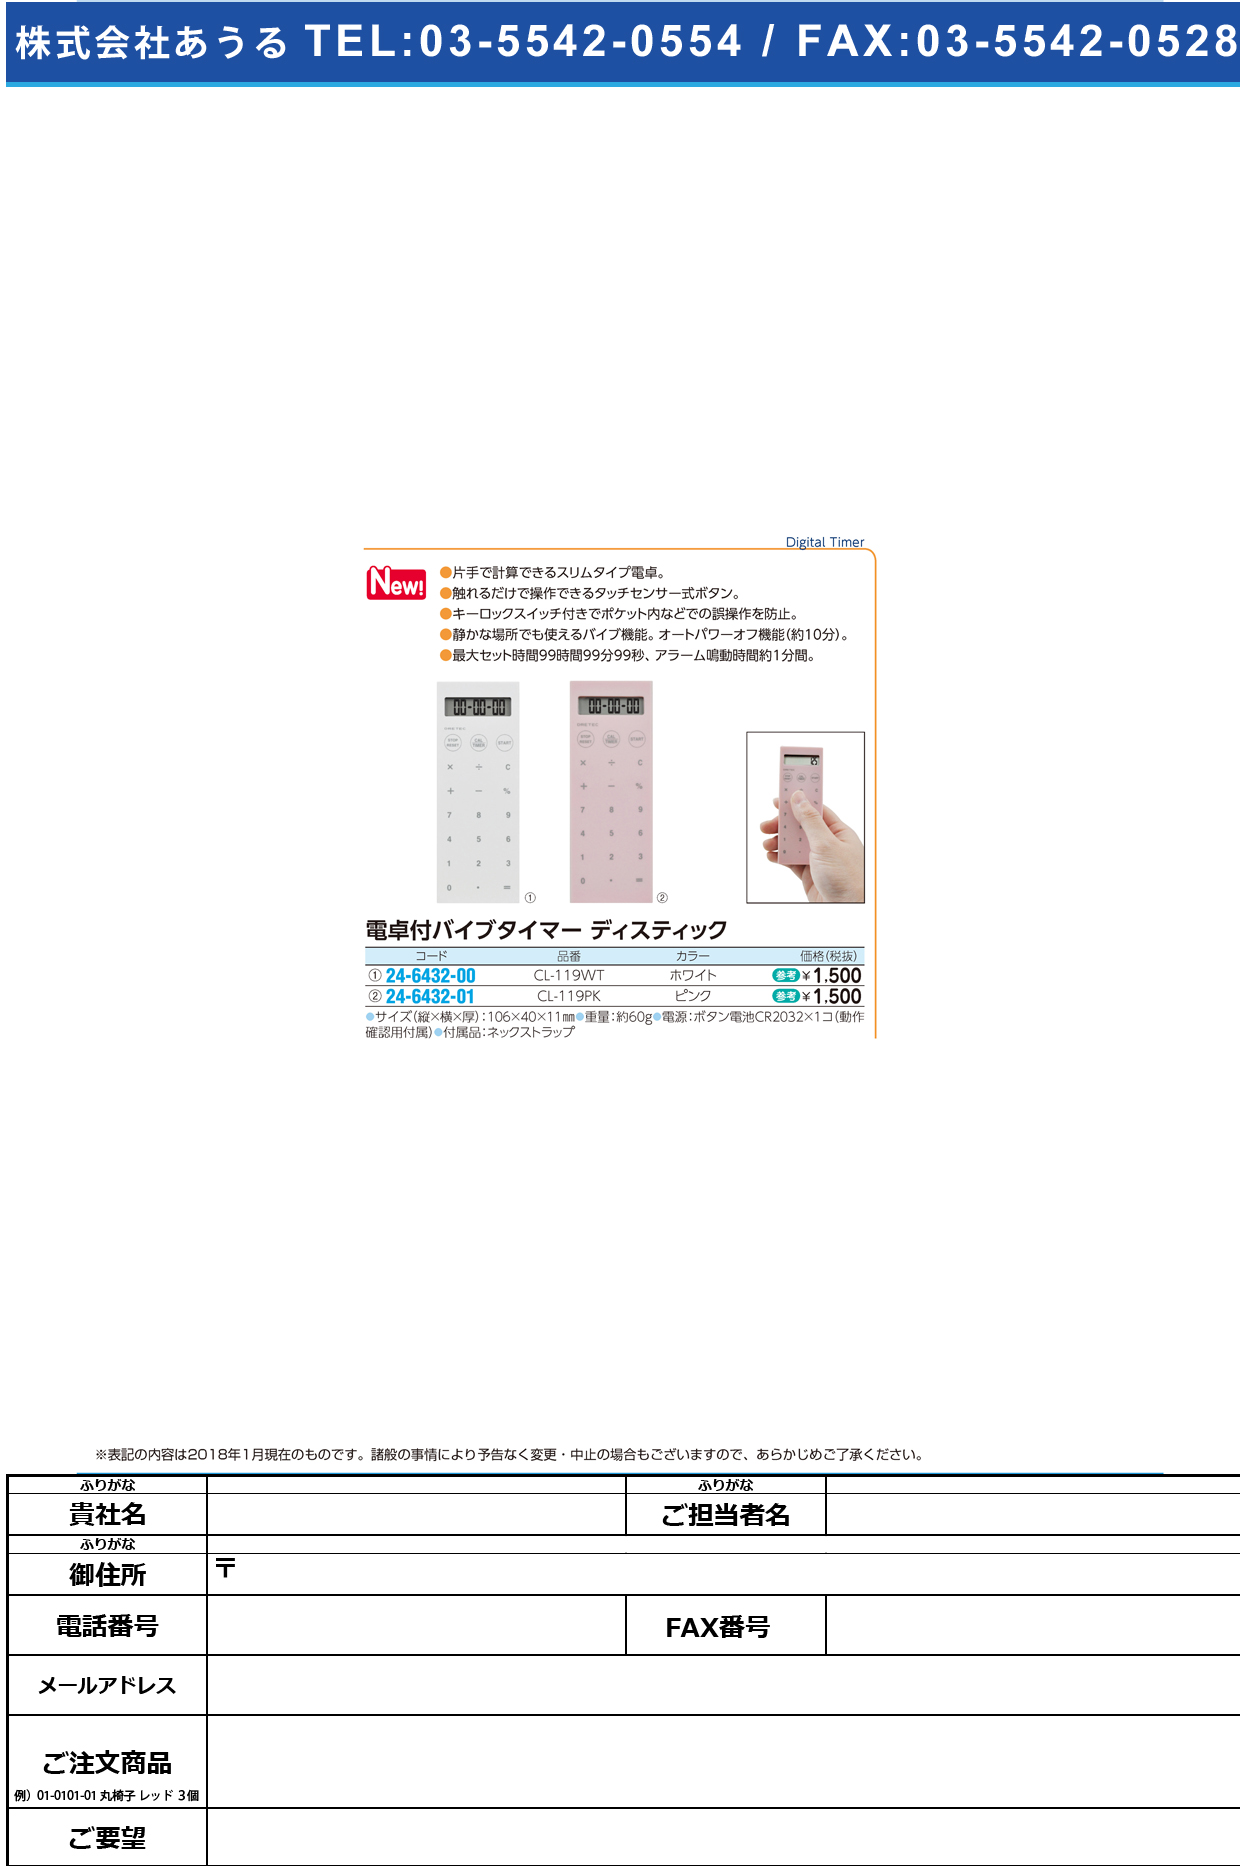 (24-6432-01)電卓付バイブタイマー CL-119PK(ﾋﾟﾝｸ) ﾃﾞﾝﾀｸﾂｷﾊﾞｲﾌﾞﾀｲﾏｰ(ドリテック)【1個単位】【2018年カタログ商品】